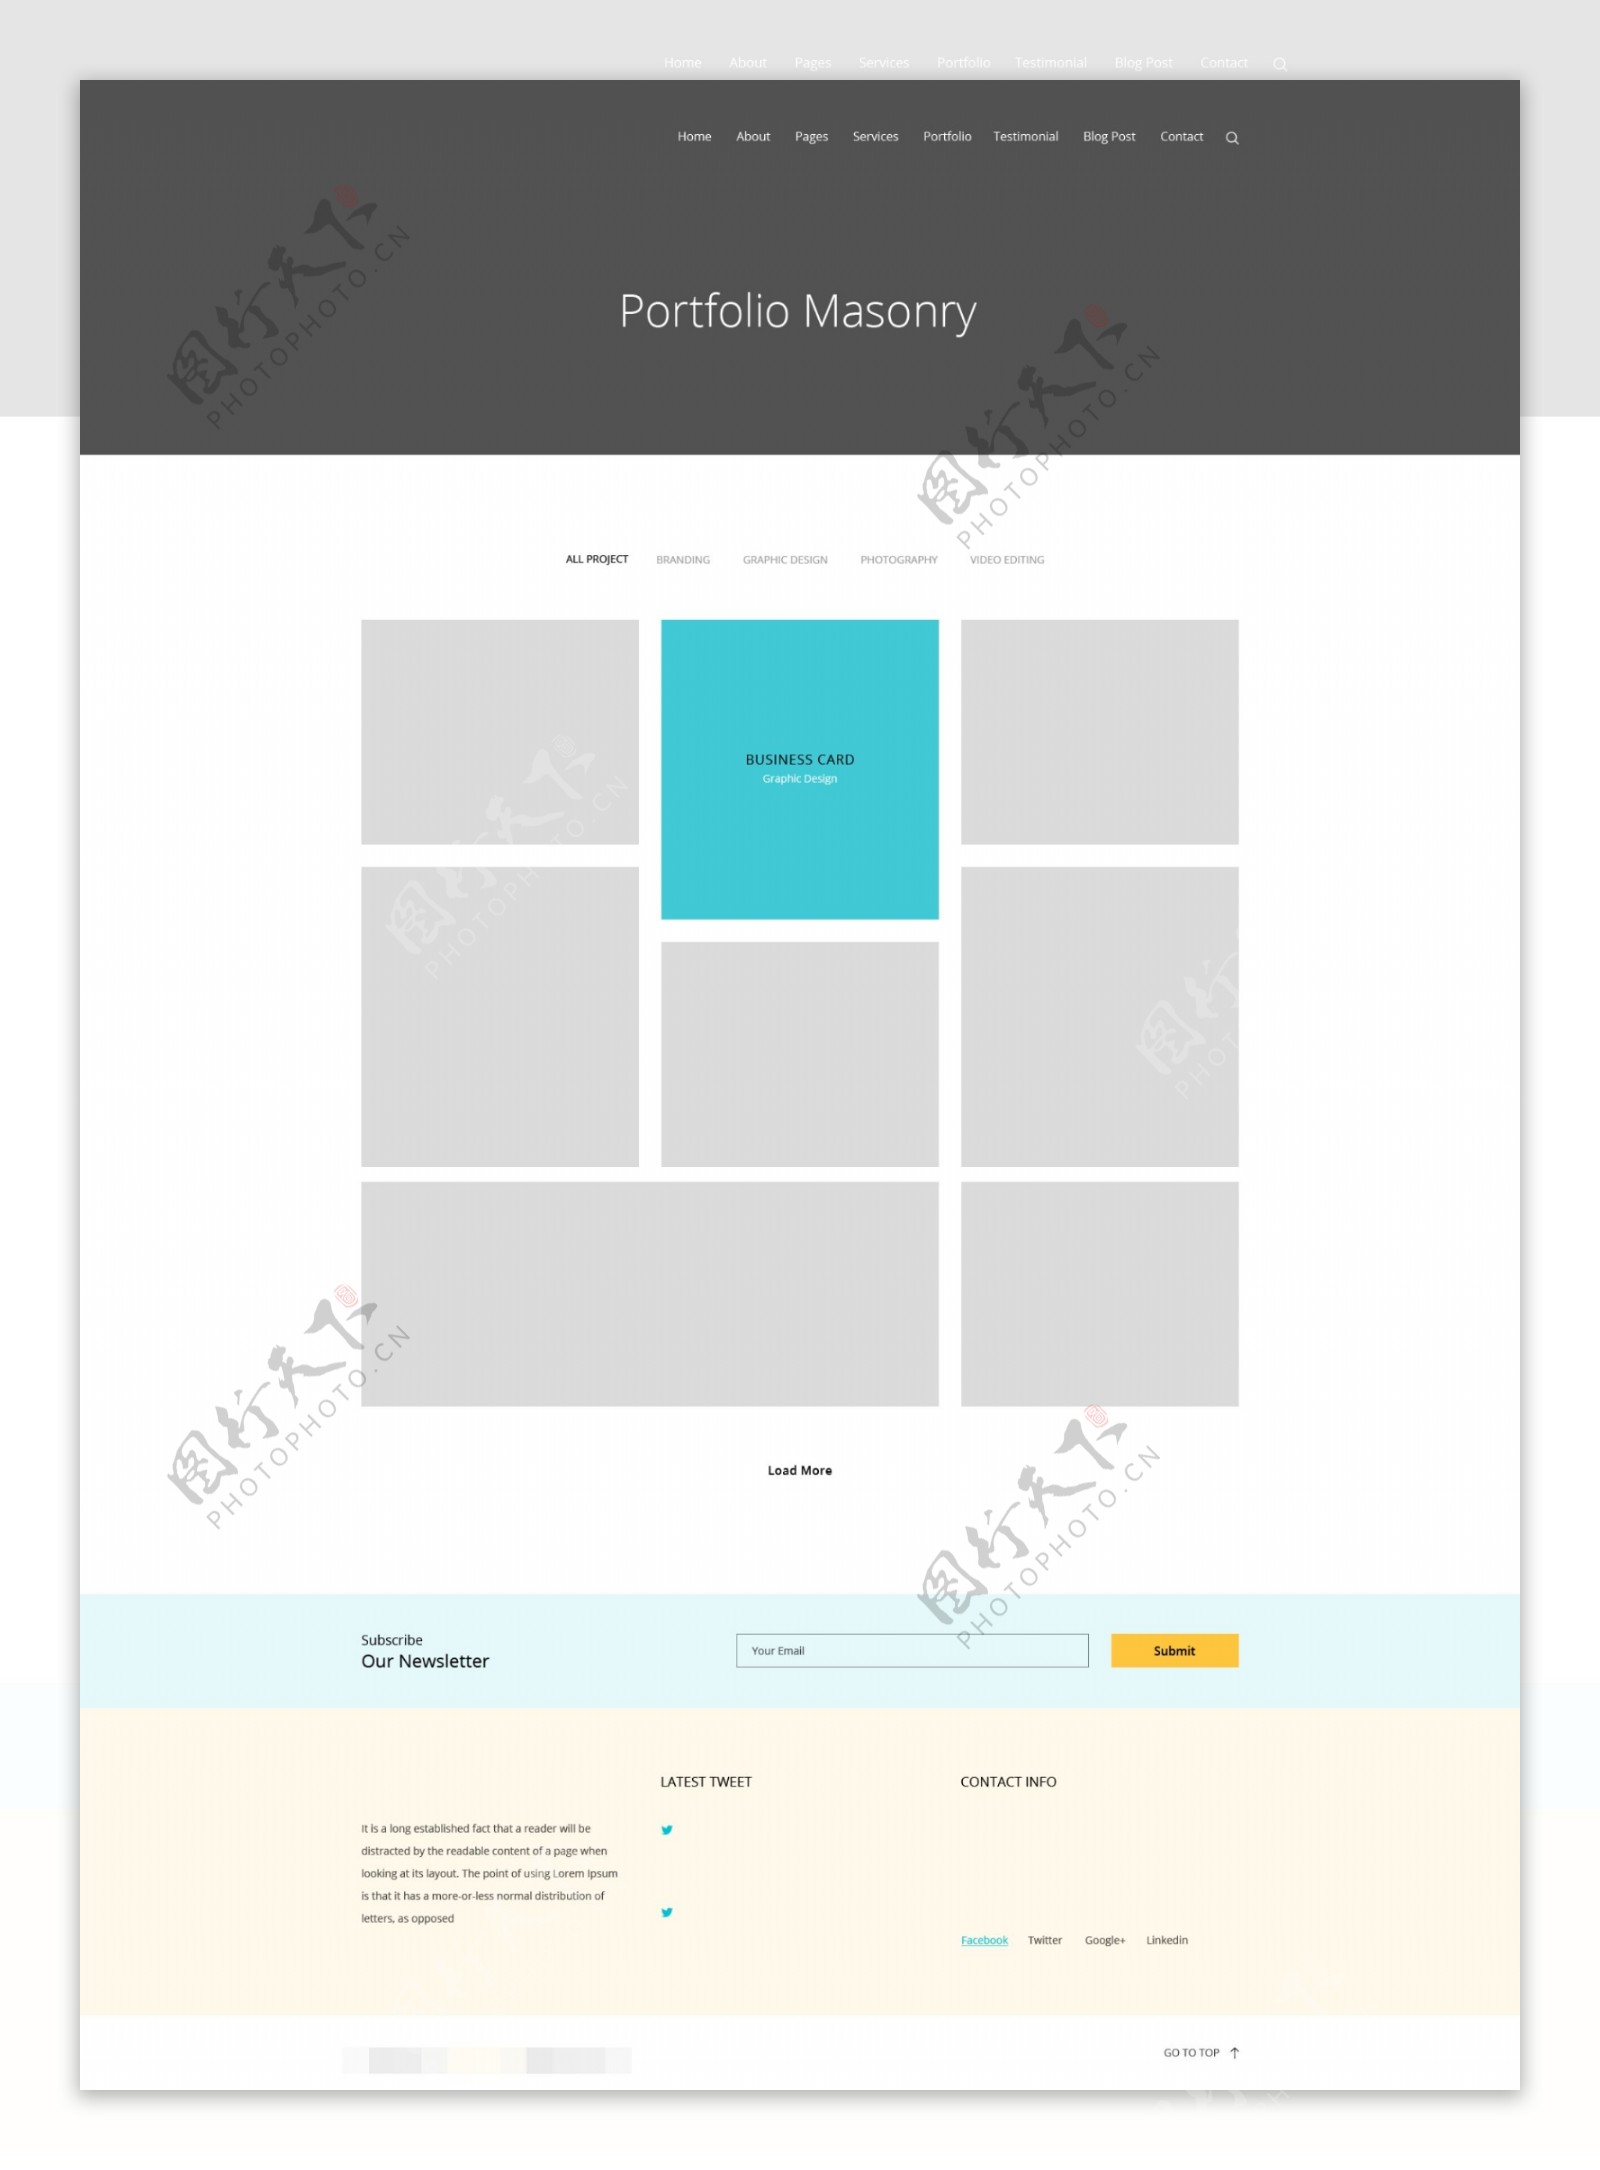 多用途网站产品组合展示页面psd模板